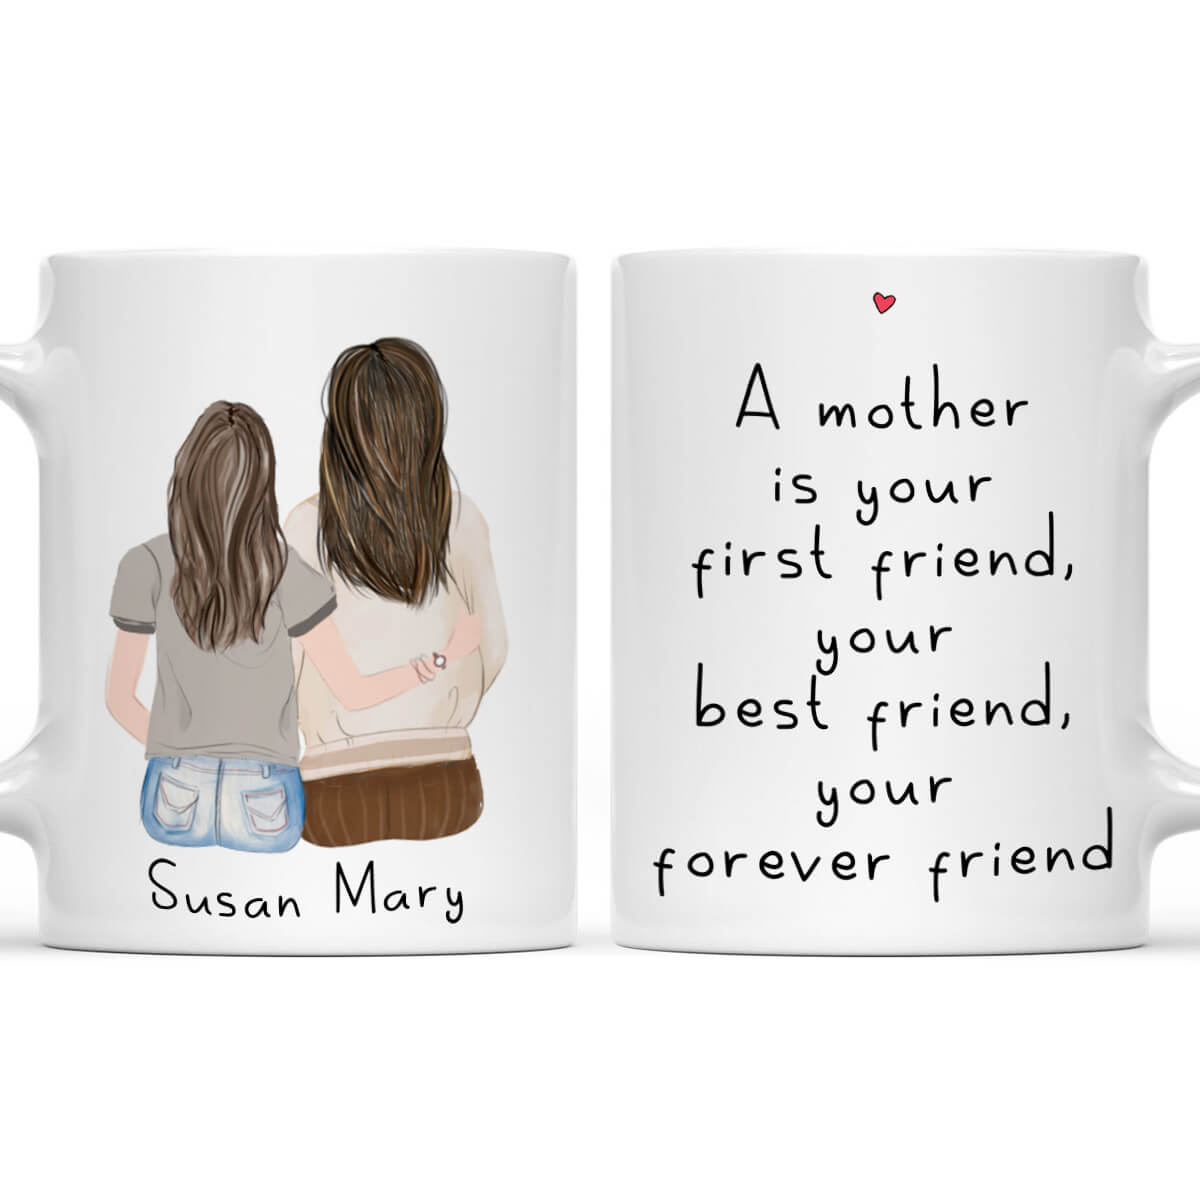 Mom Mug Best Mom Ever Mug Mothers Day Gift Idea Mothers Day Gift From  Daughter Mother's Day Gift for Mom Mom Coffee Mug Mom Gift 